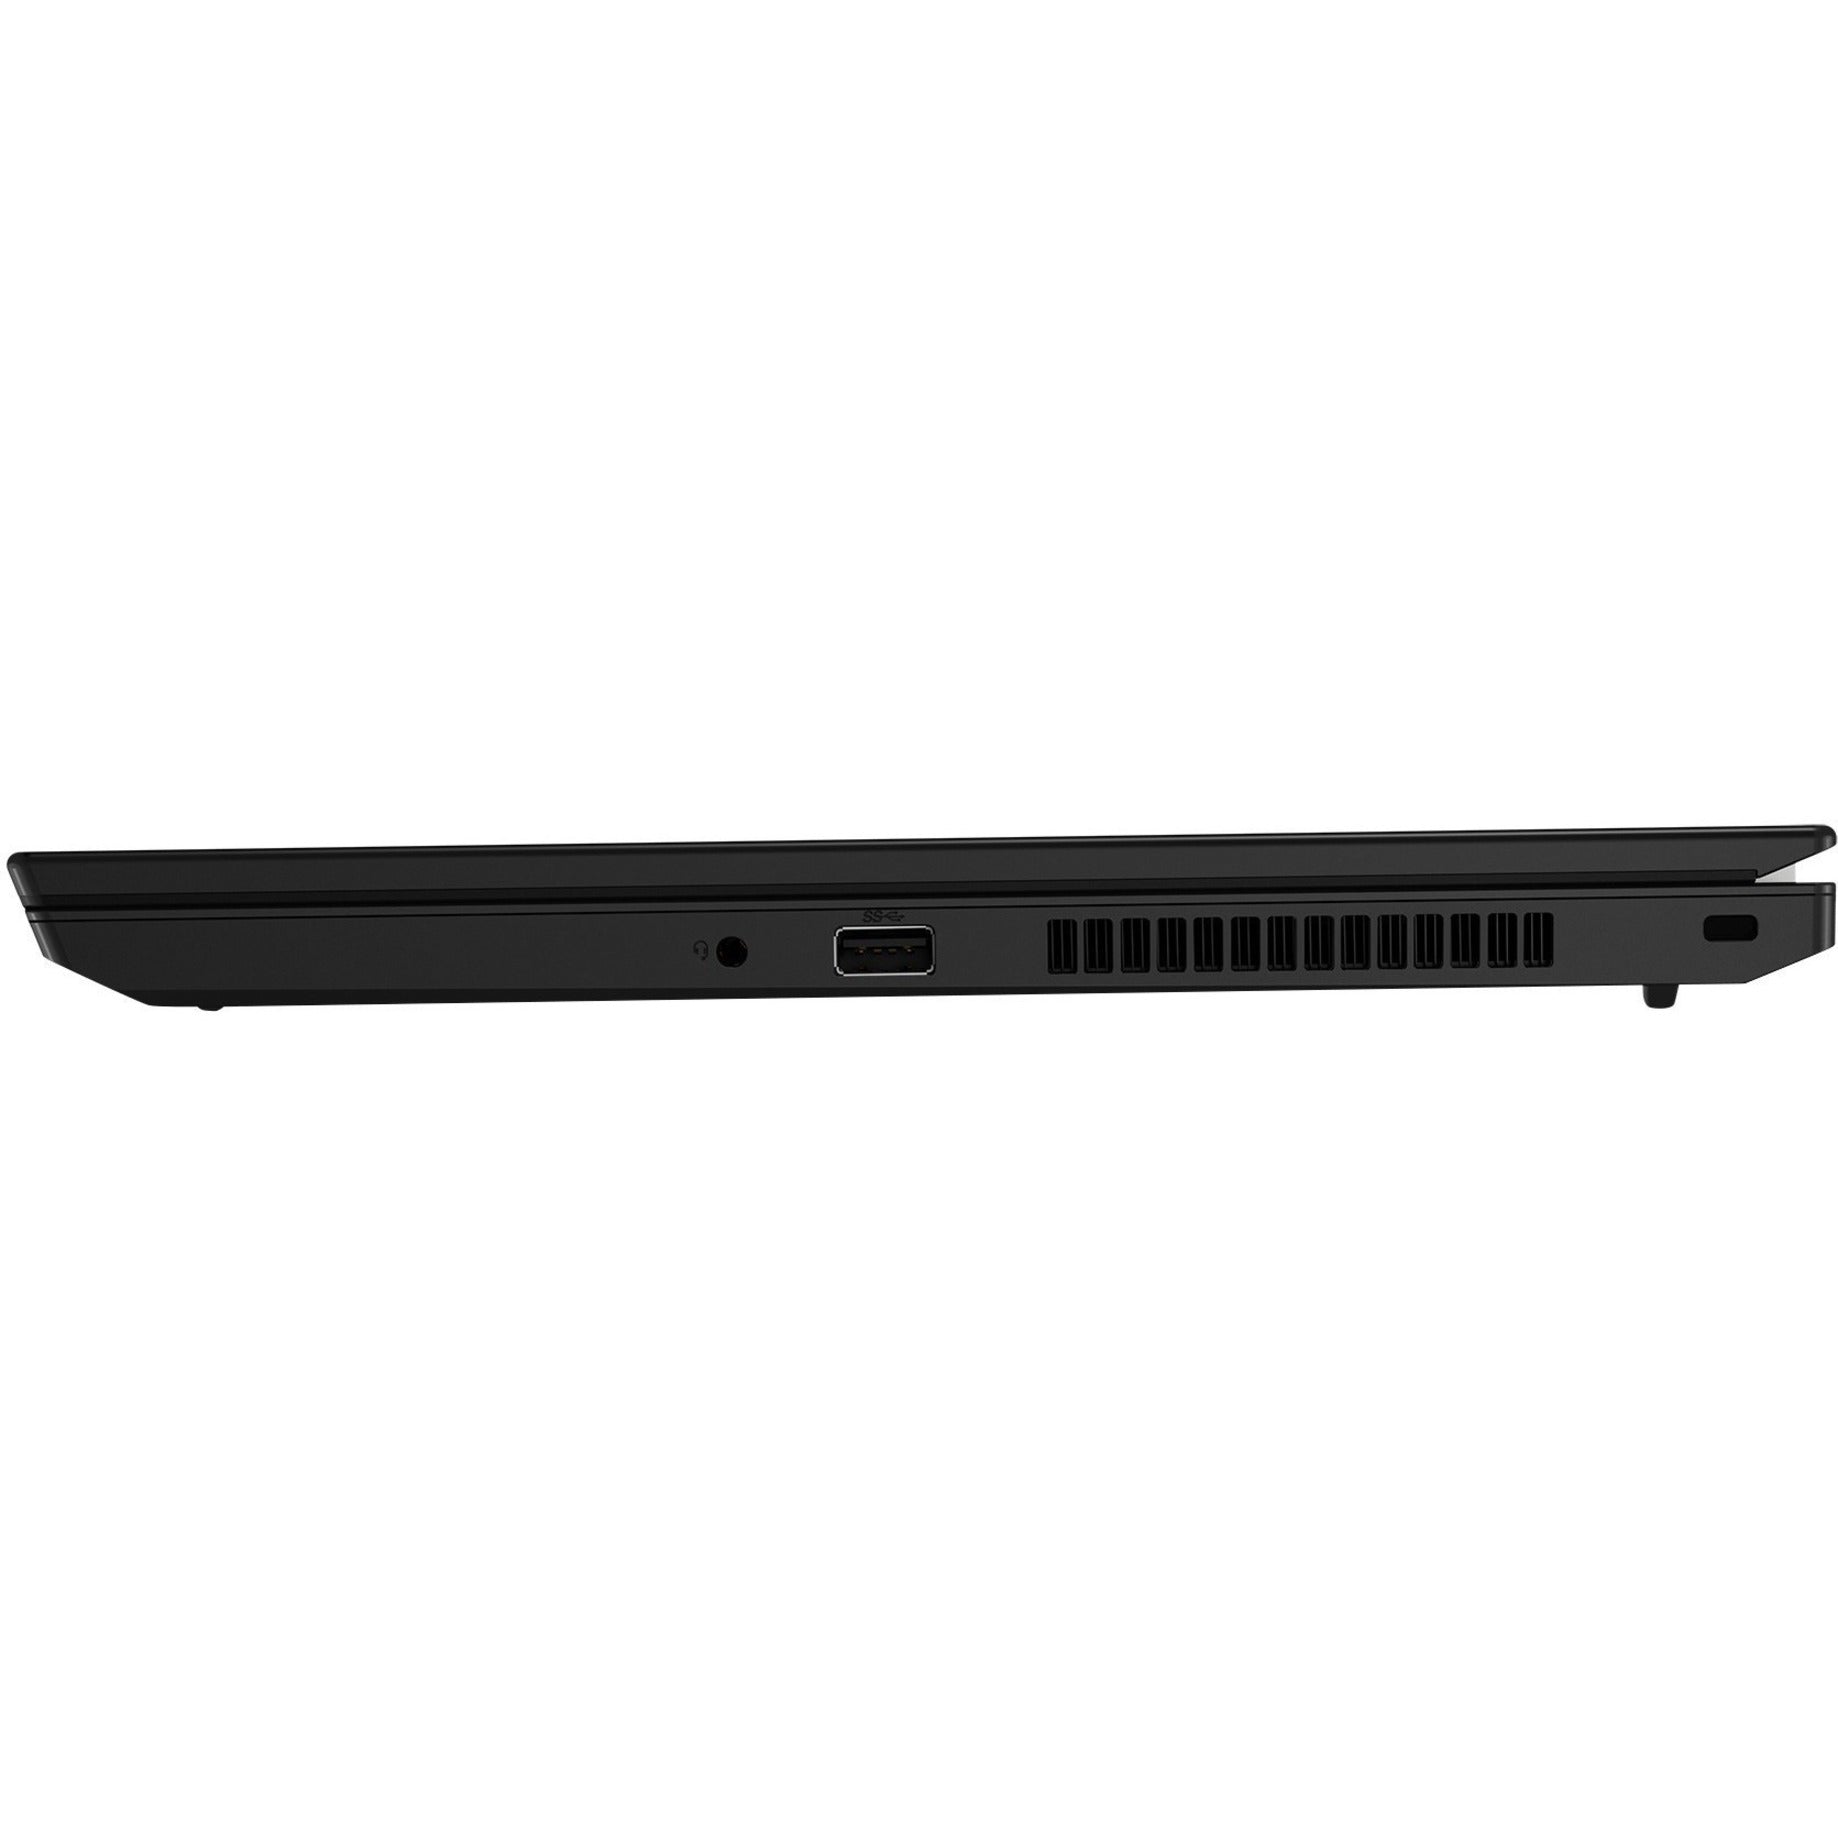 Lenovo 20X300HBUS ThinkPad L15 Gen 2 (Intel) Notebook, Windows 10 Pro, Intel Iris Xe Graphics, 15.6" Full HD, 8GB RAM, 256GB SSD